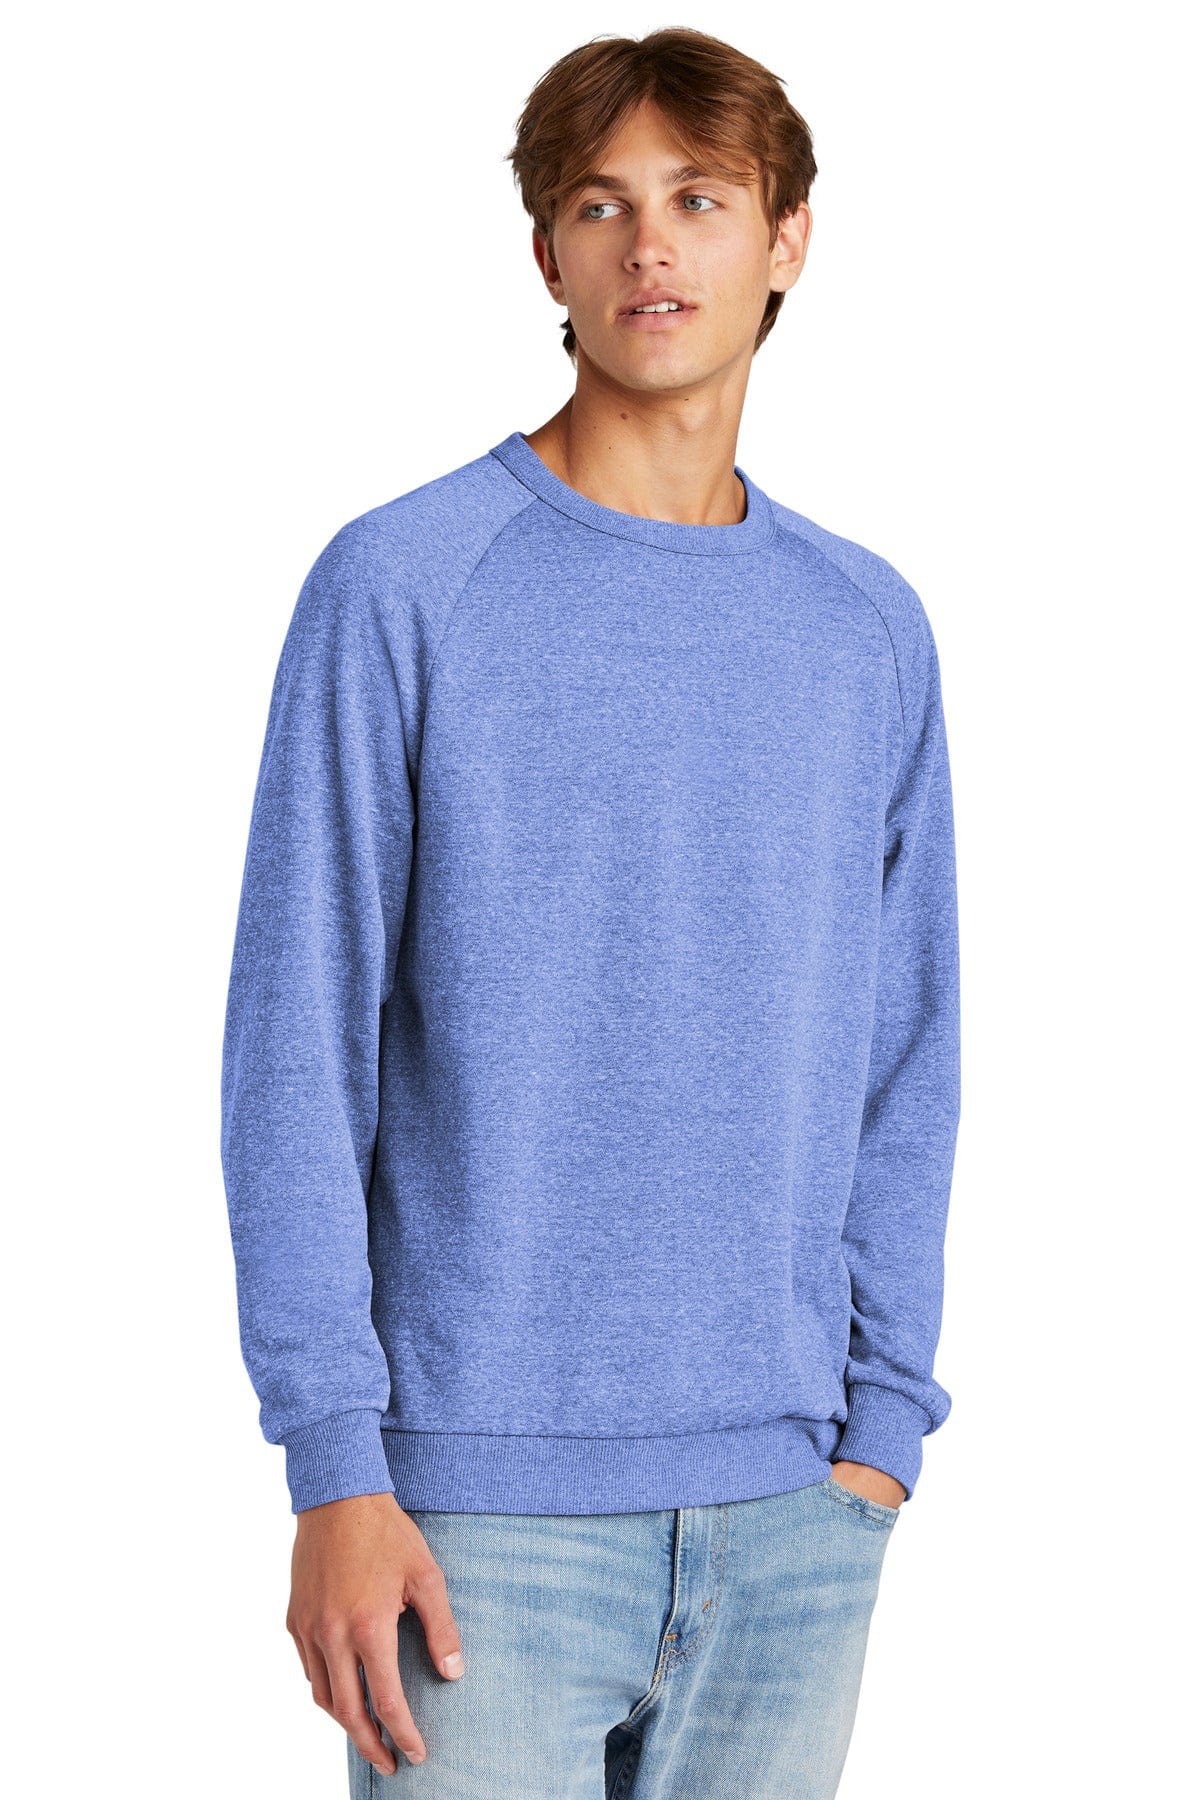 District Sweatshirts/Fleece District DT1304: Perfect Tri Fleece Crewneck Sweatshirt